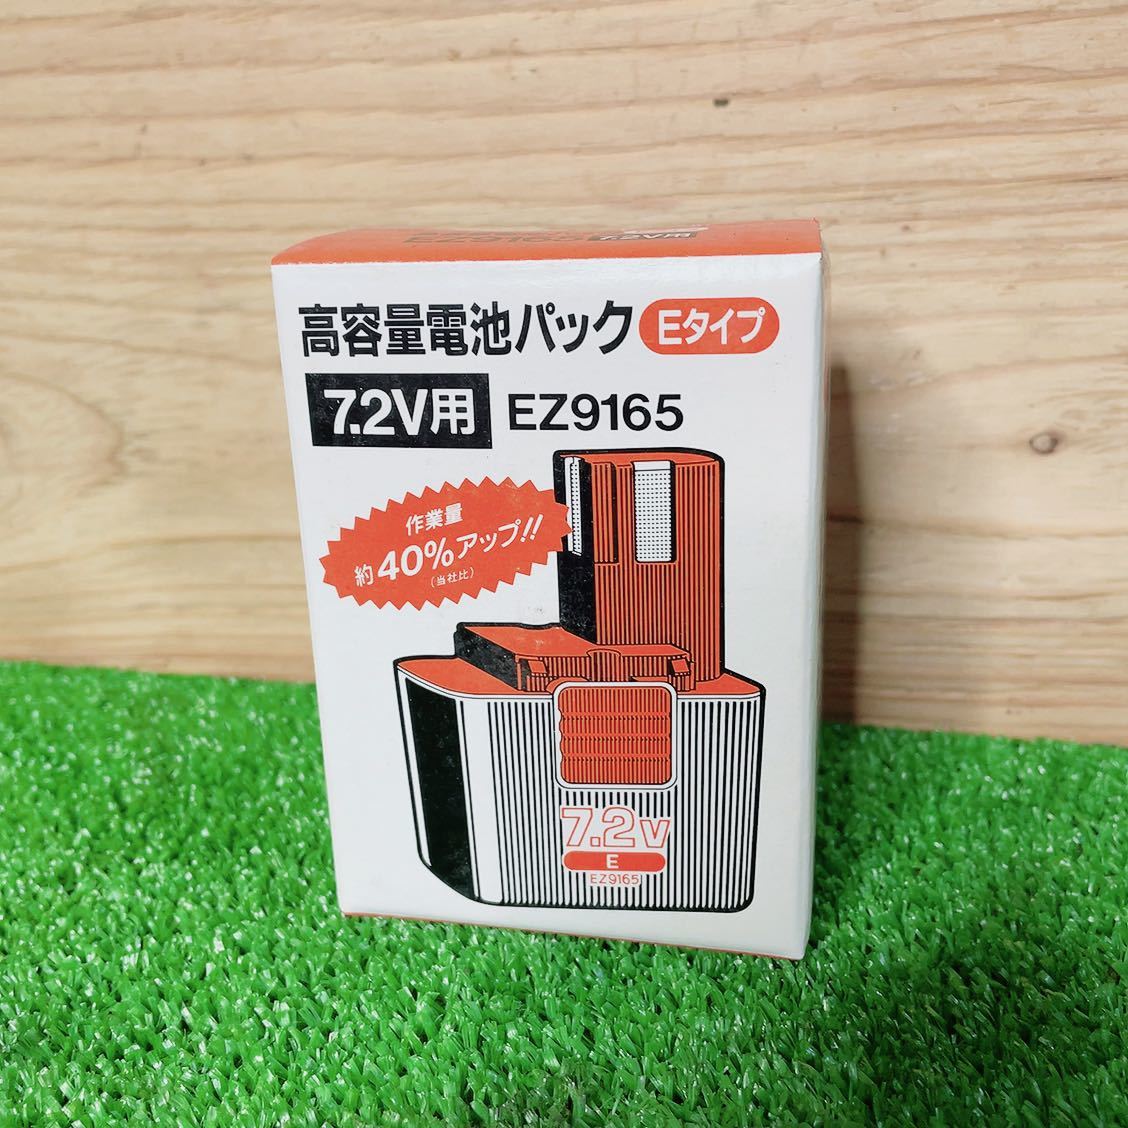 ★未使用★national ナショナル バッテリー 充電池 EZ9165 7.2V No.1